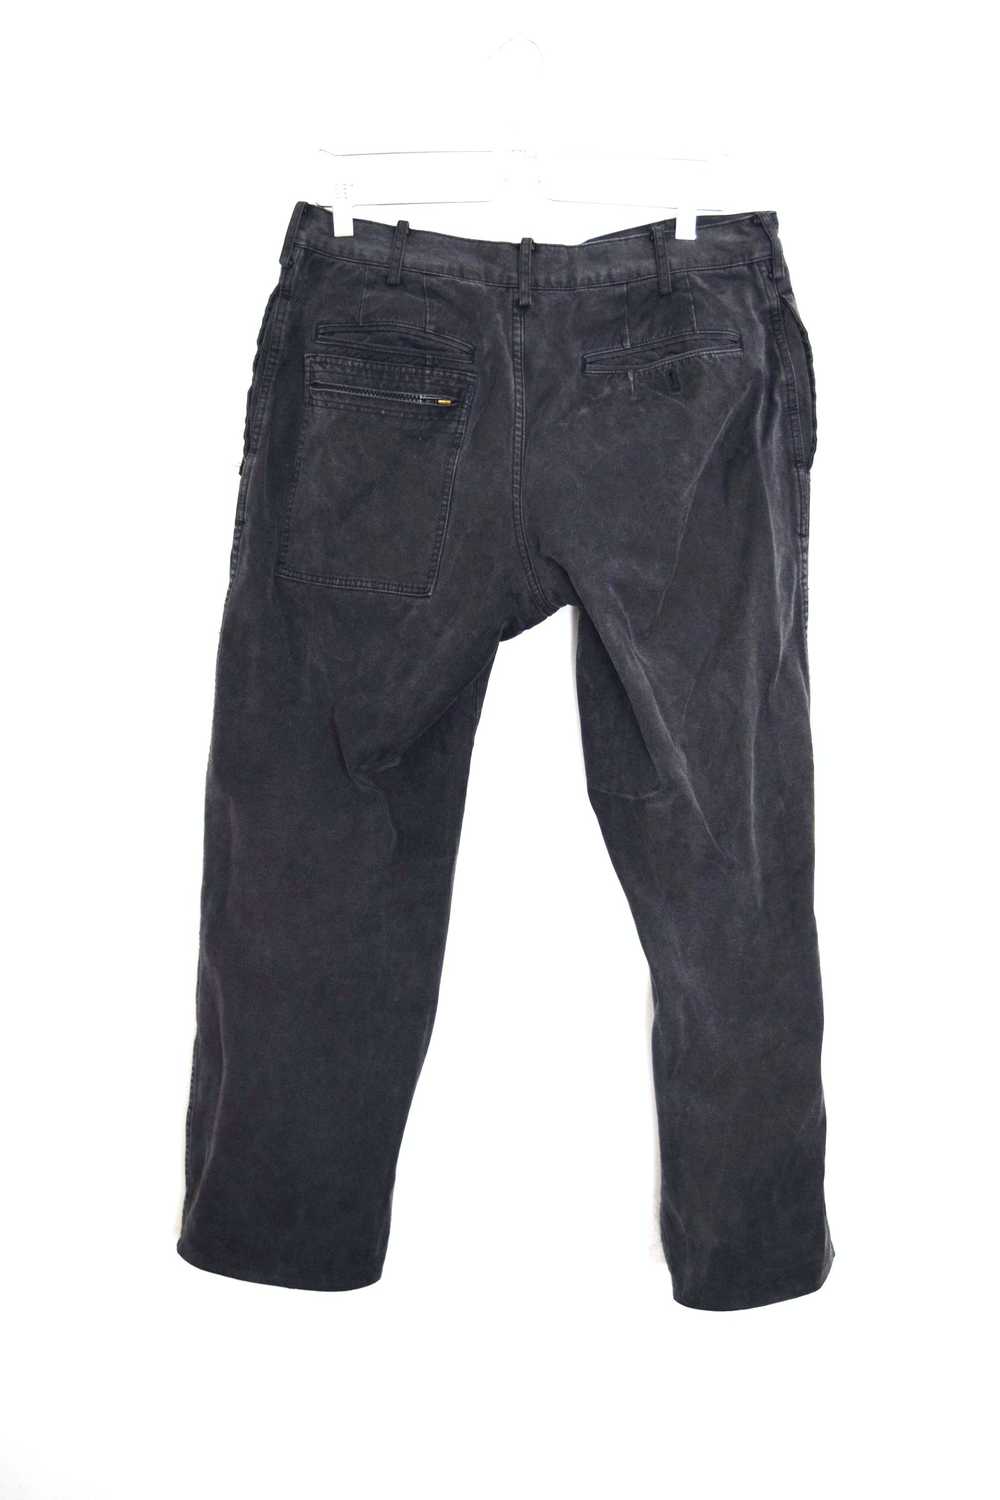 Yohji Yamamoto 2006SS Cropped Denim Pants - image 2